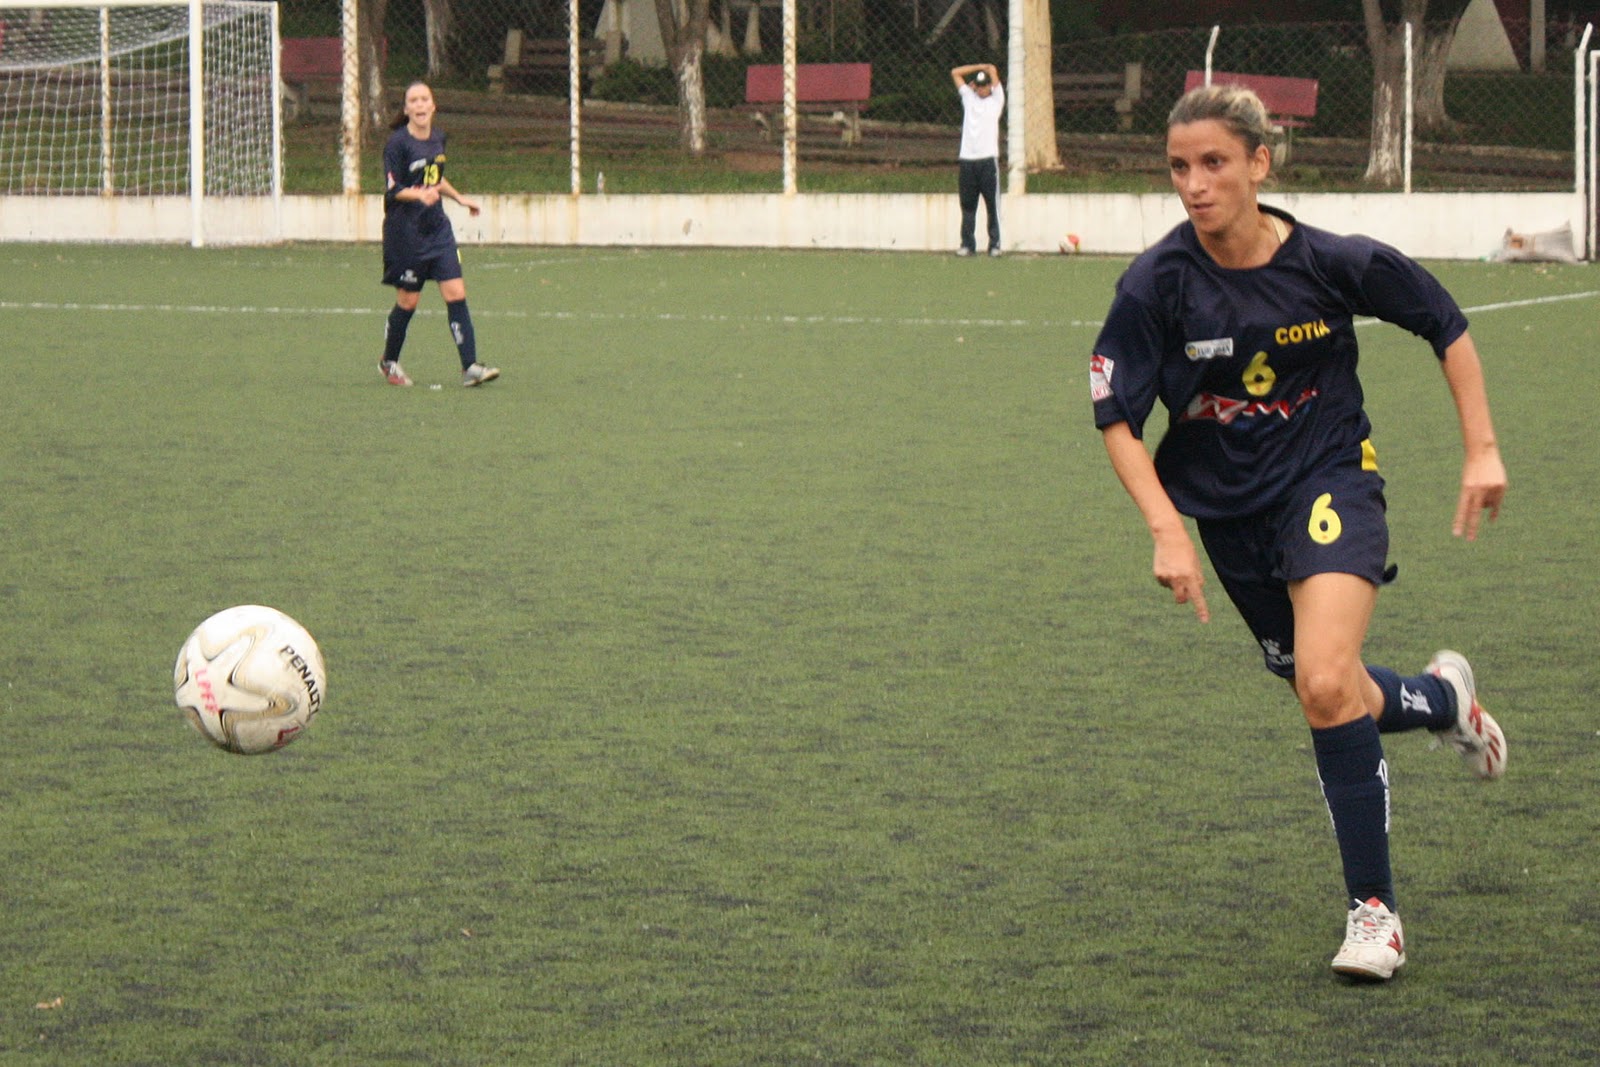 Esportes em Botucatu: Botucatu estréia na Copa Paulista de Futebol Feminino